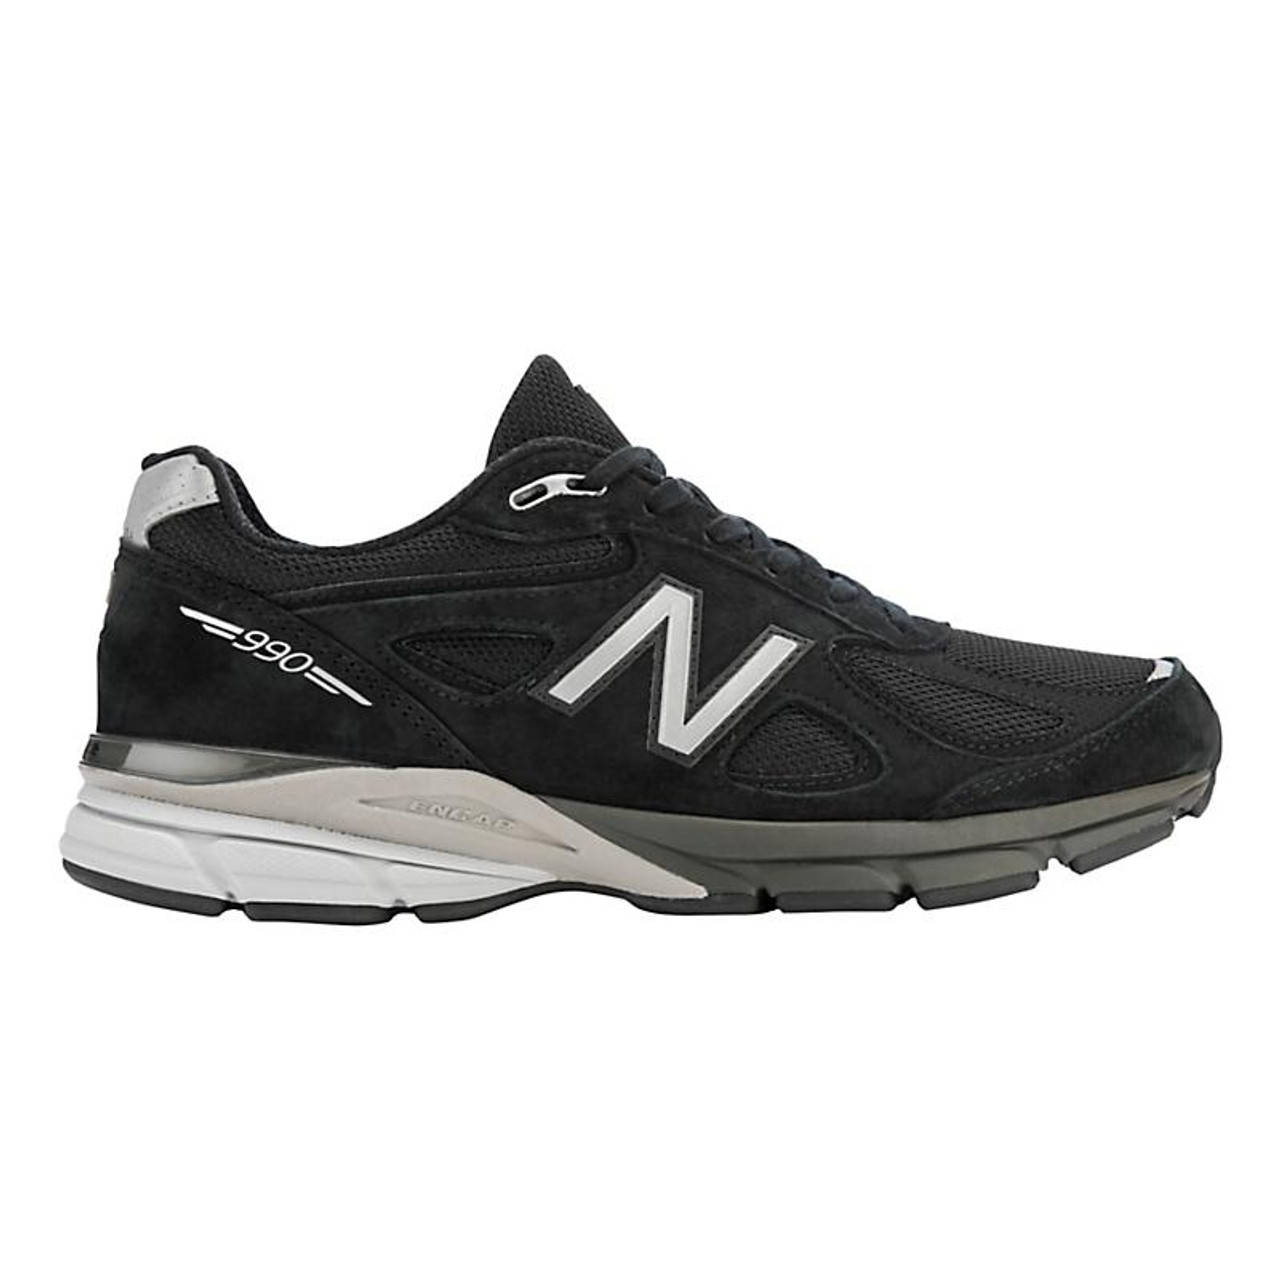 men's new balance 990v4 running shoes